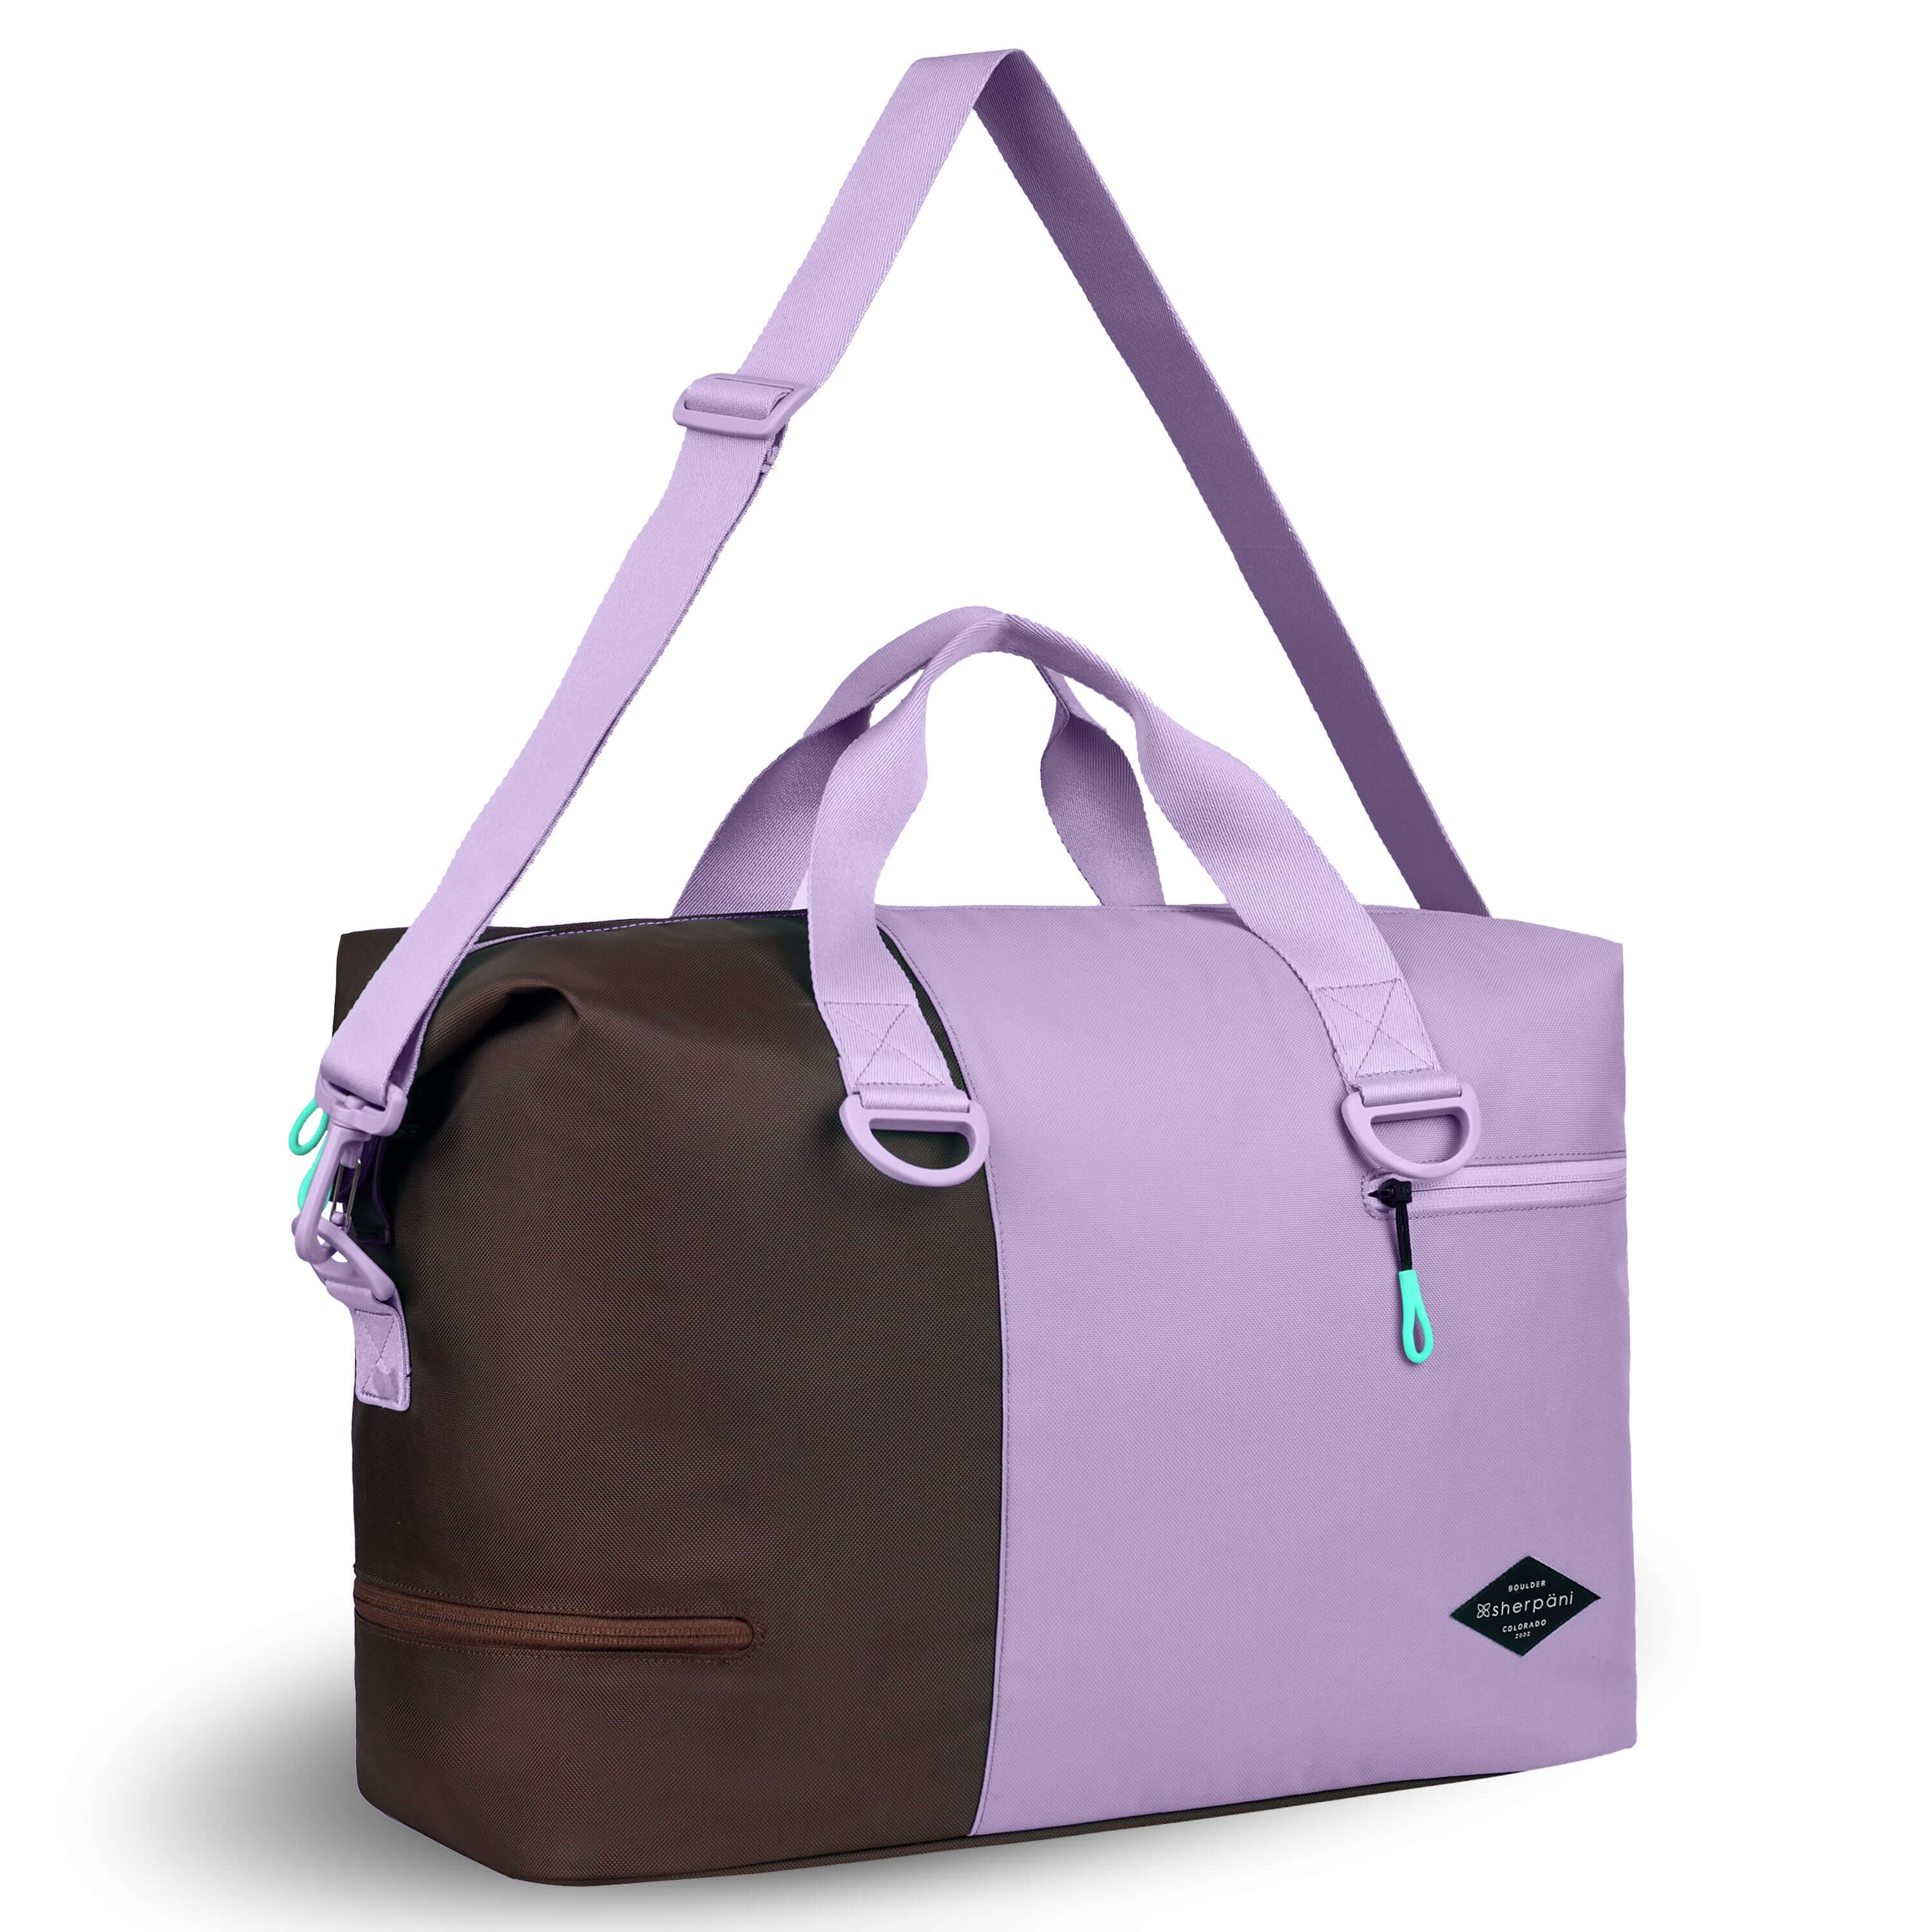 Wholesale Custom Newest Weekender Bag Woman Pink Travel Luggage